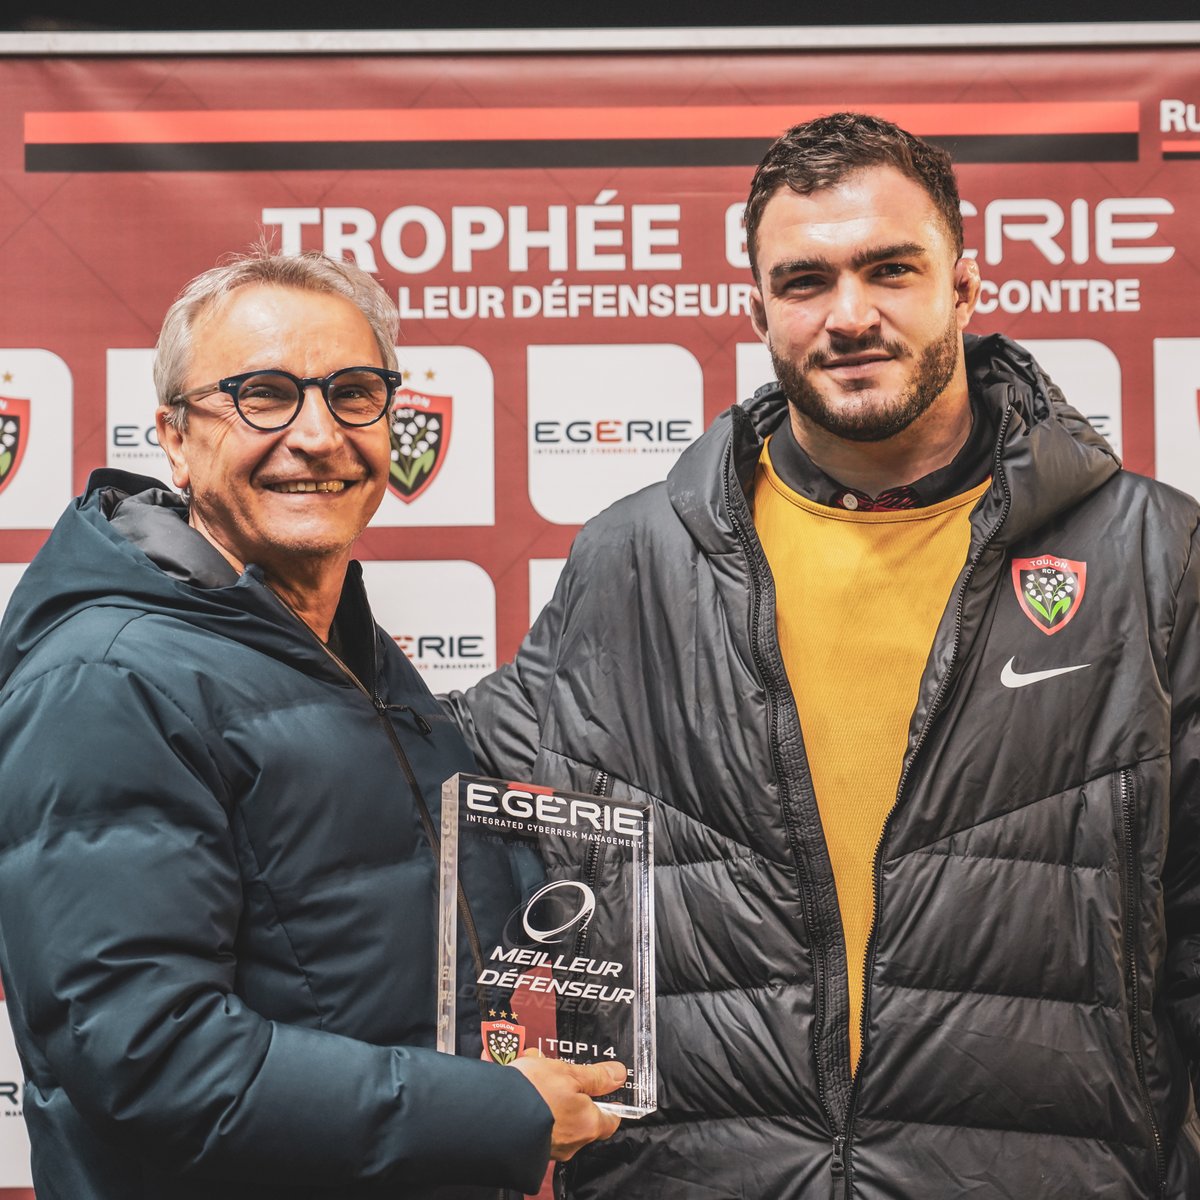 En tant que meilleur défenseur du match #RCTUBB, 𝐓𝐞𝐝𝐝𝐲 𝐁𝐚𝐮𝐛𝐢𝐠𝐧𝐲 a reçu son Trophée @EGERIEsoftware ce dimanche à Mayol ! 💥